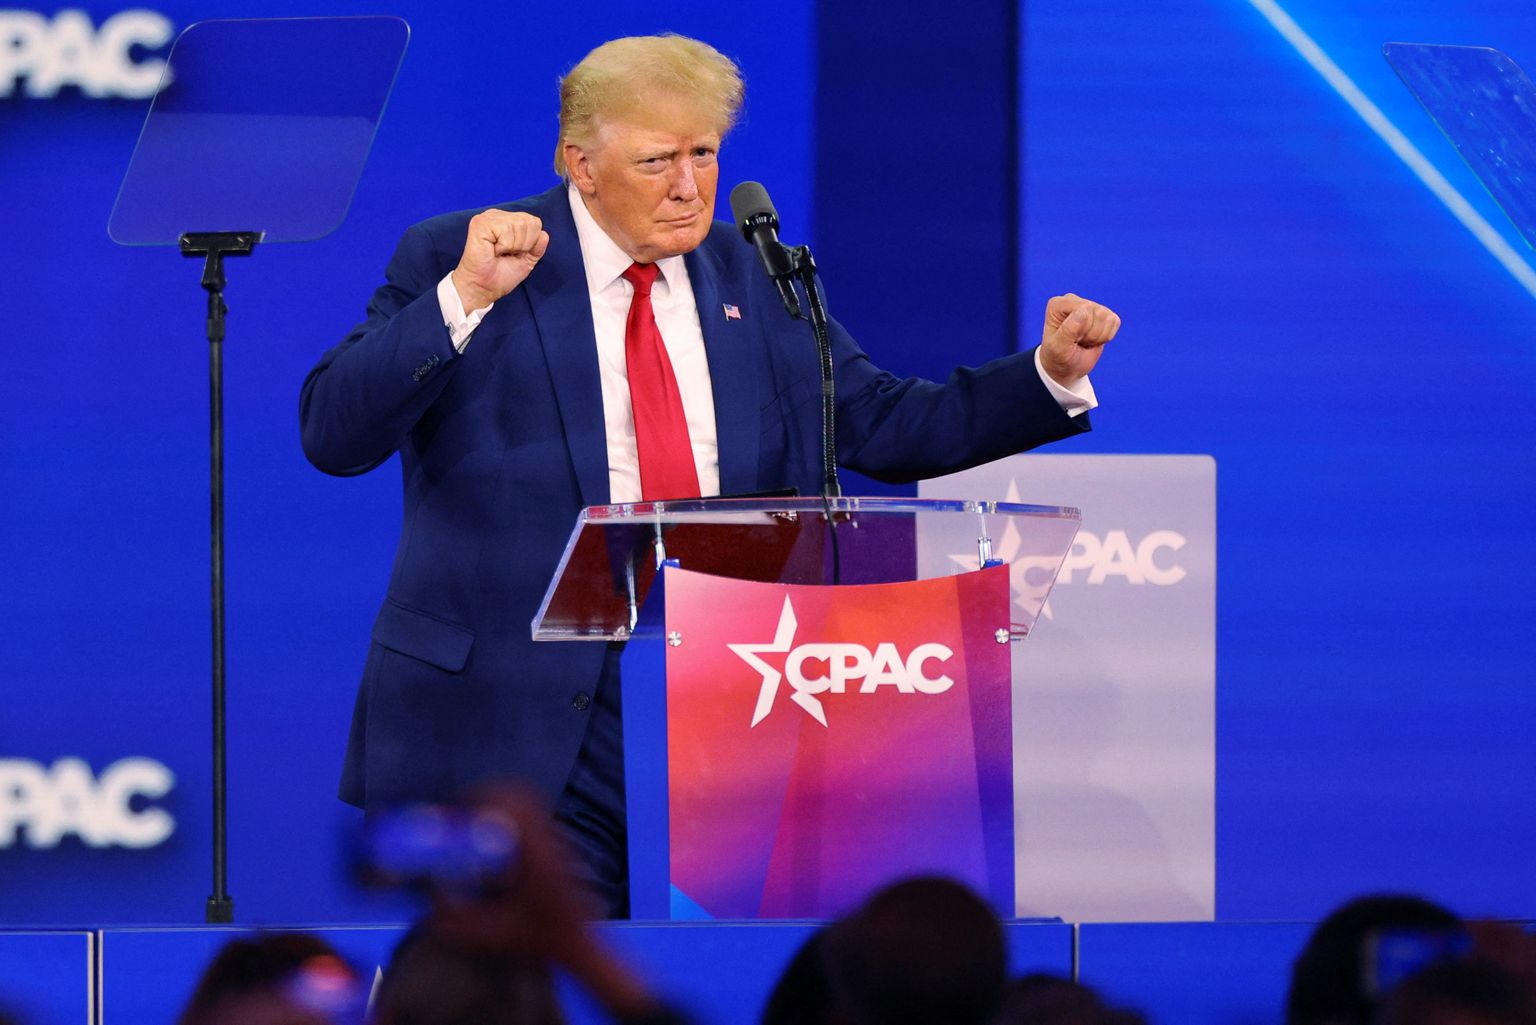 Endine USA president Donald Trump tantsib laval pärast Dallases toimunud konservatiivide poliitilisel tegevuskonverentsil (CPAC) peetud kõnet.